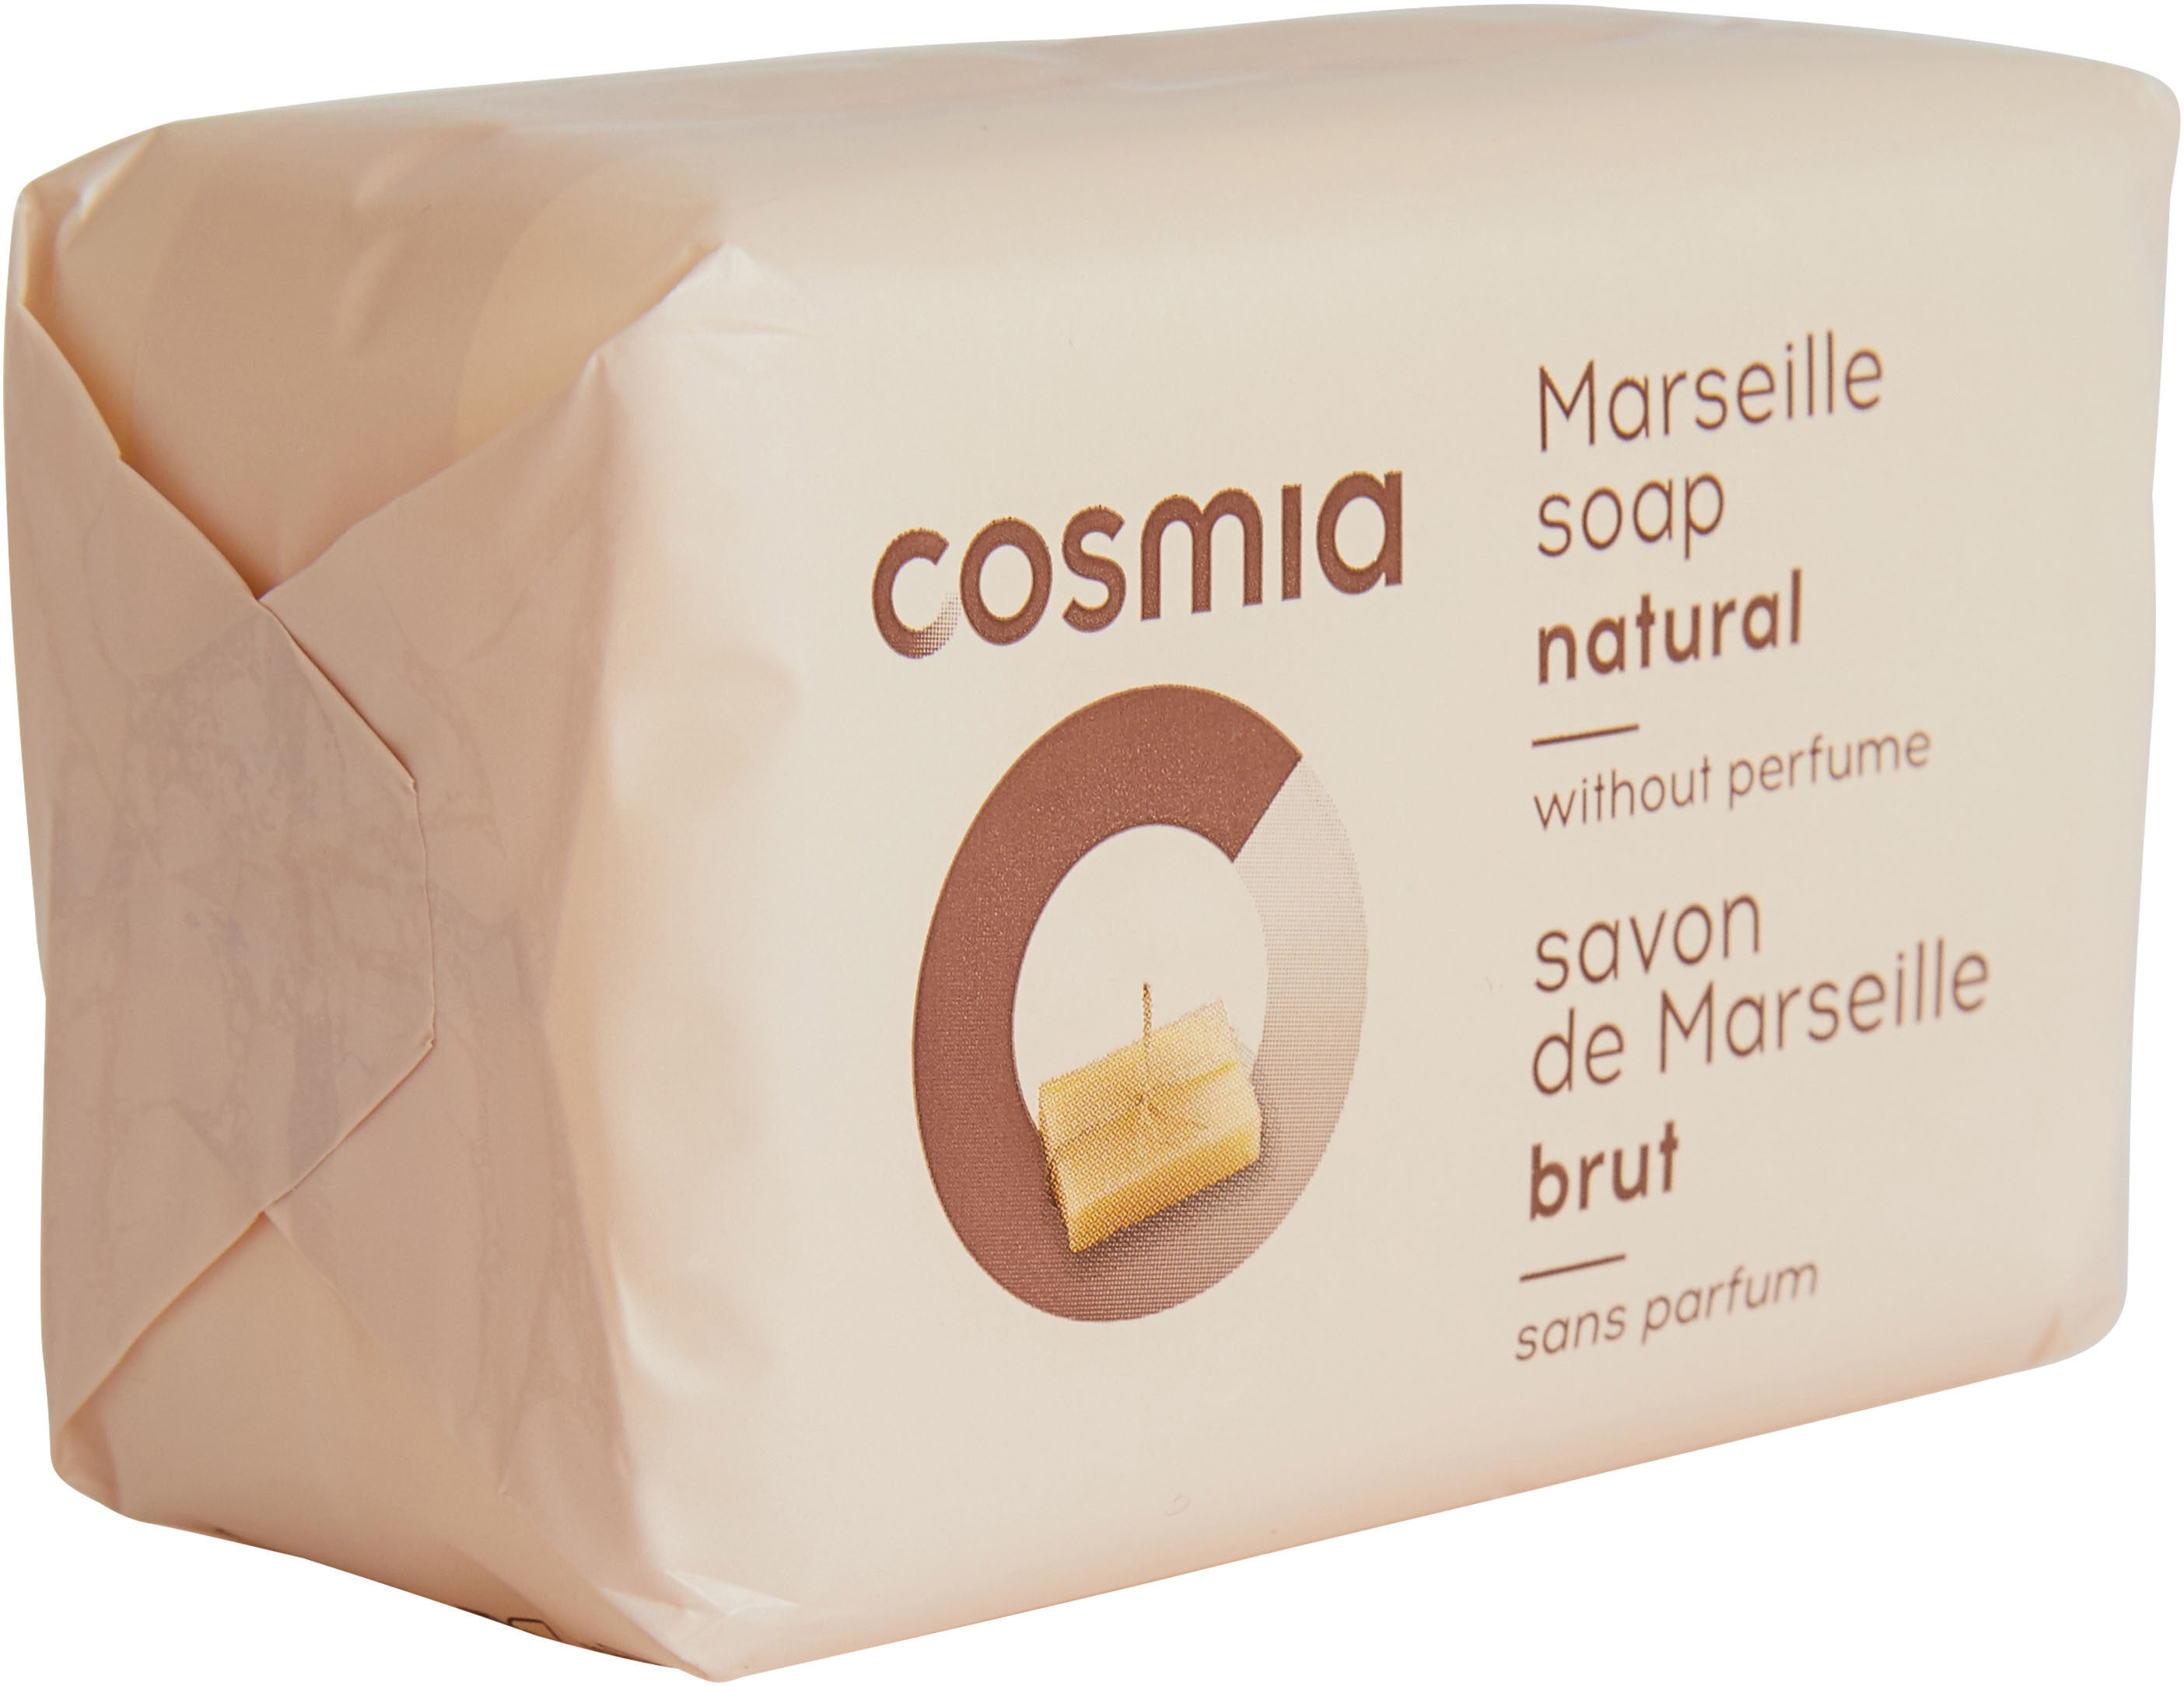 savon de Marseille brut - Produkt - fr